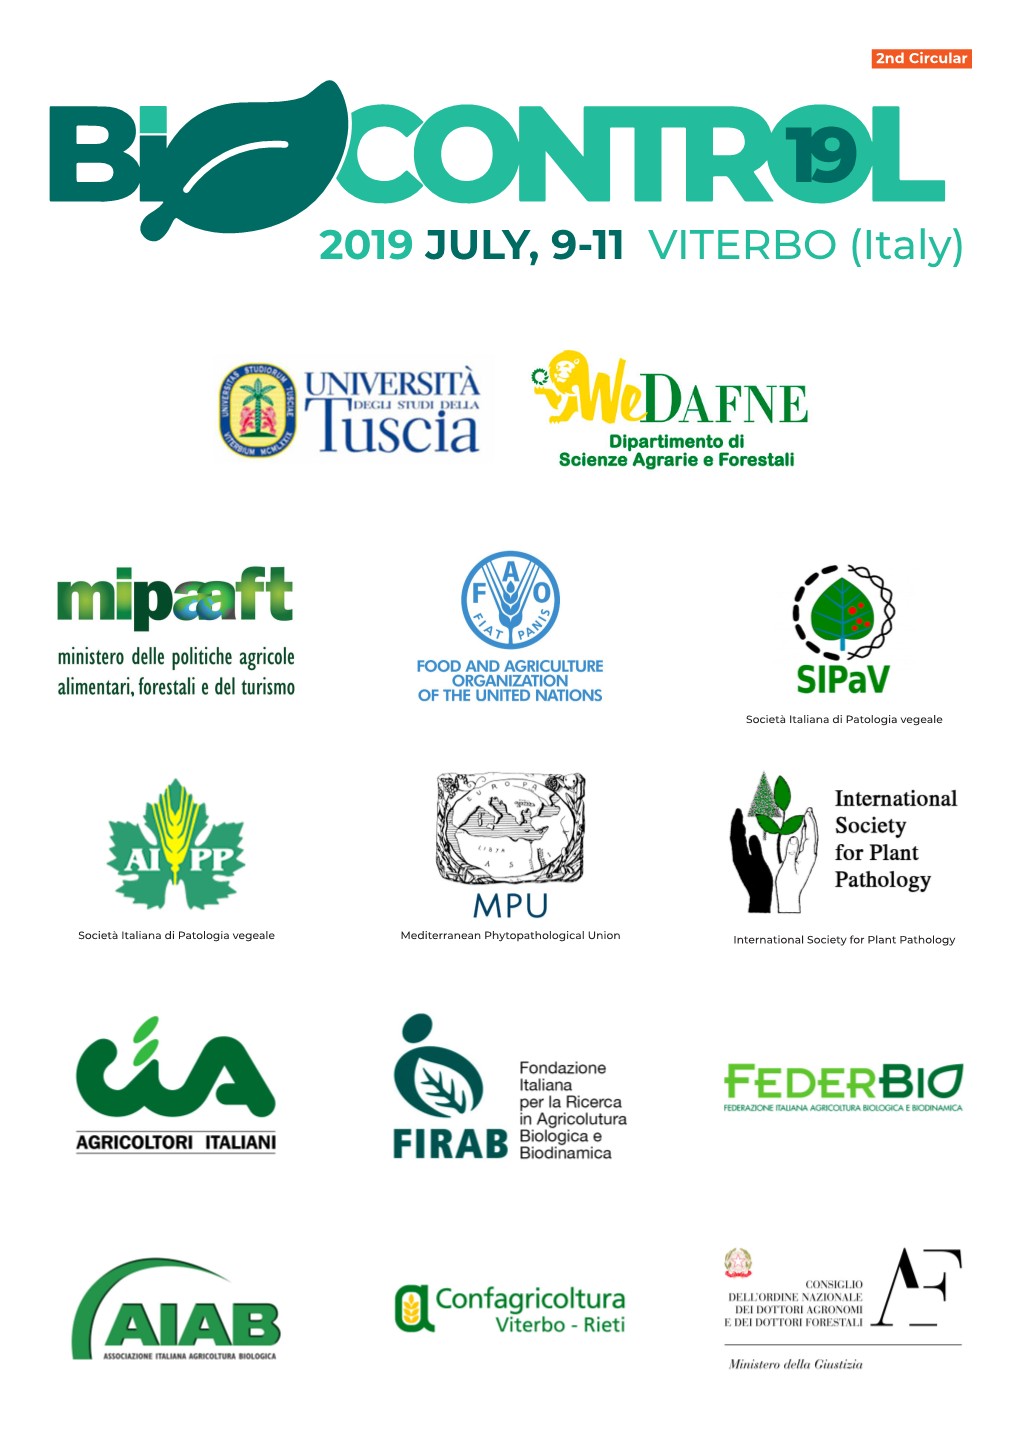 2019 JULY, 9-11 VITERBO (Italy)